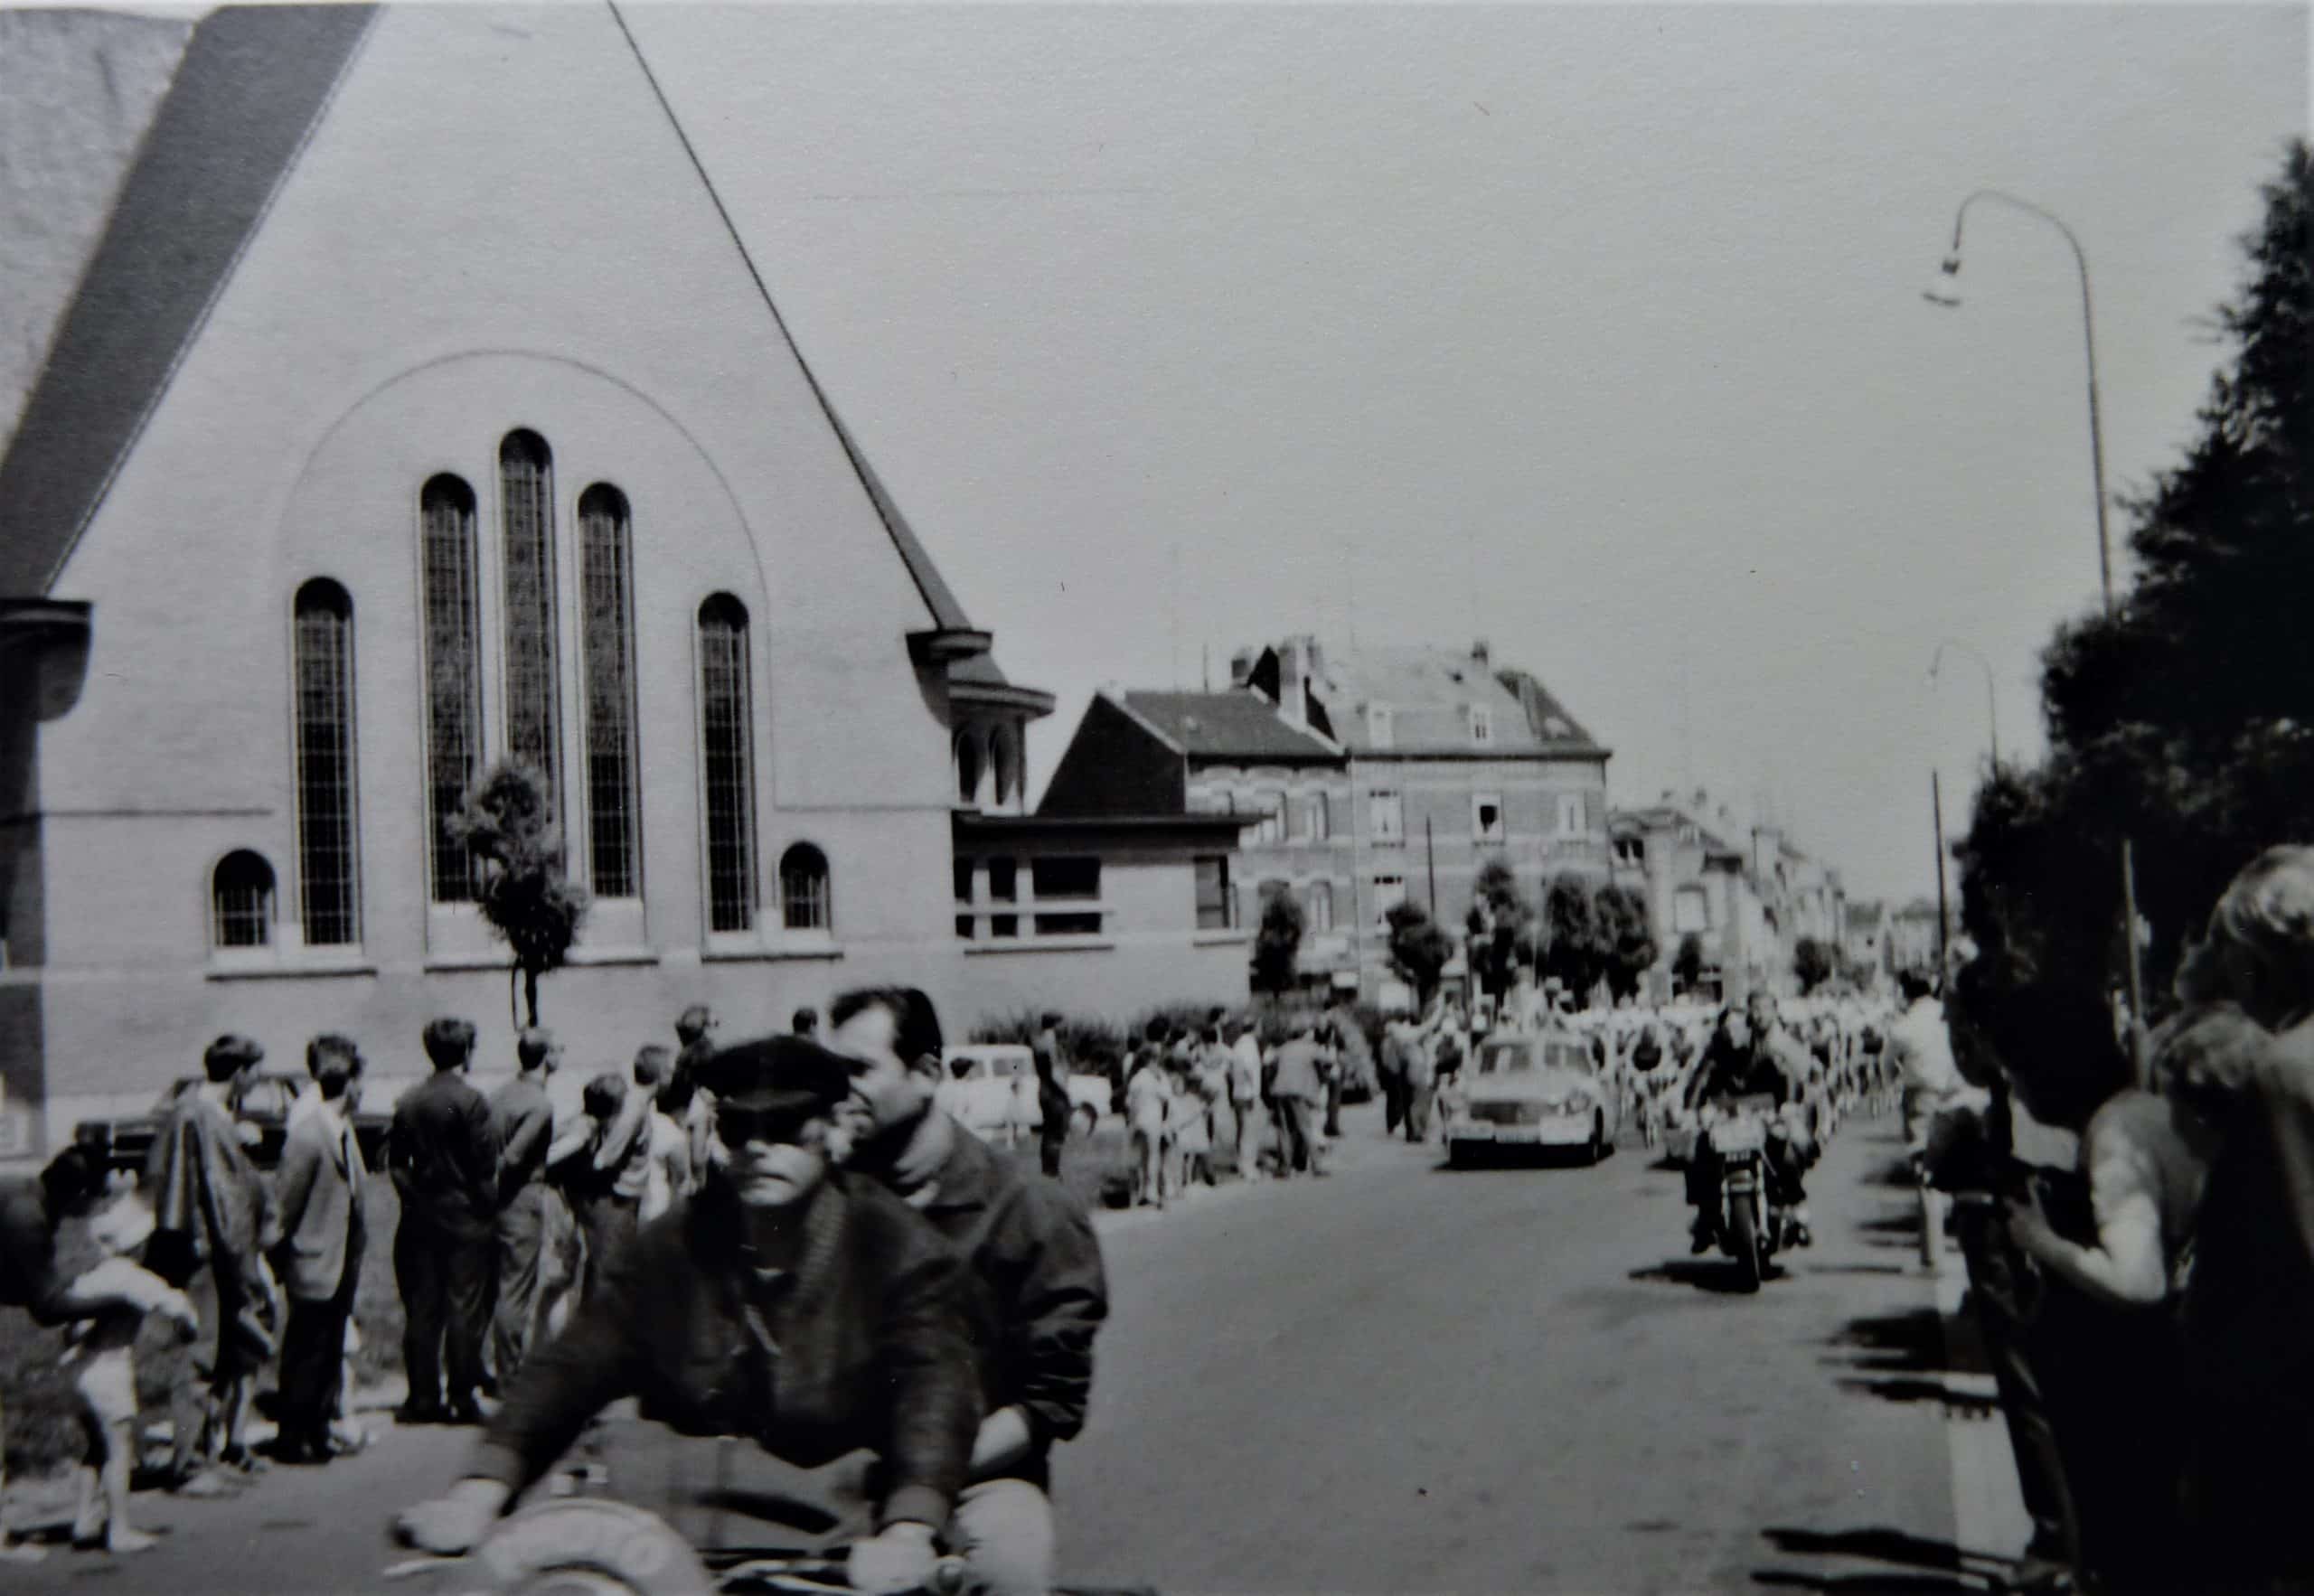 El Tour de Francia pasa por Anderlecht en 1968. Foto cortesía de Christian Polfliet, coloreada y mejorada por MyHeritage